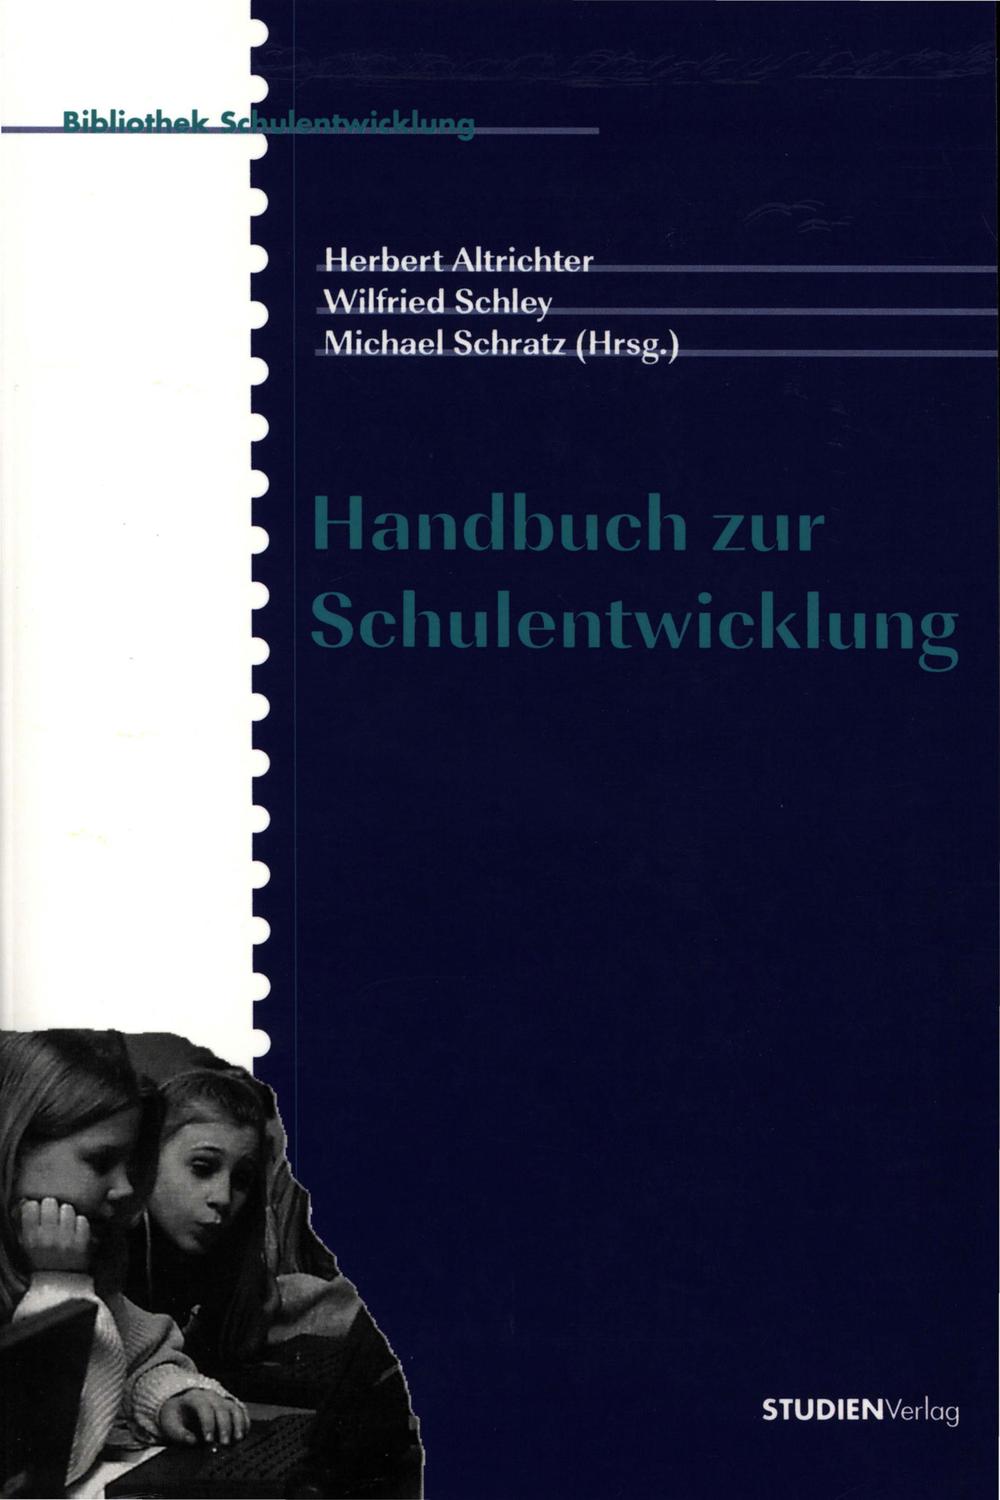 Handbuch zur Schulentwicklung - Herbert Altrichter, Wilfried Schley, Michael Schratz